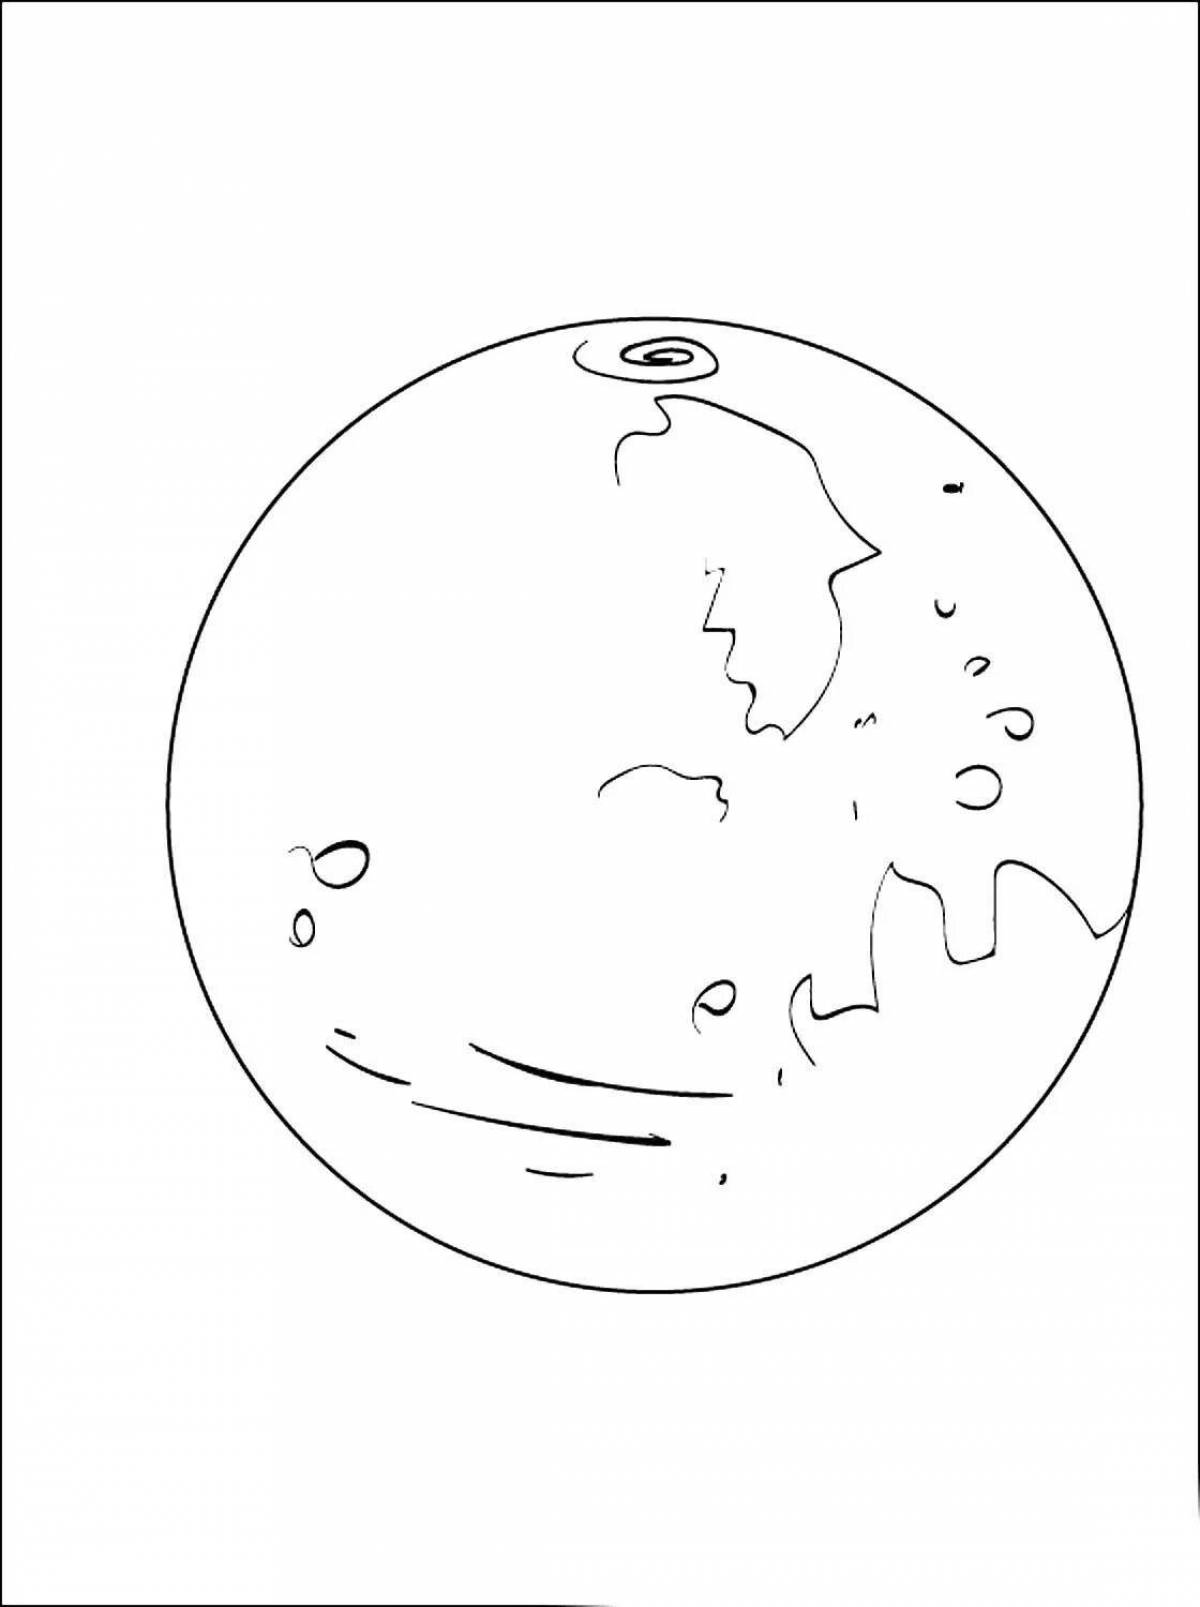 Pluto fun coloring book